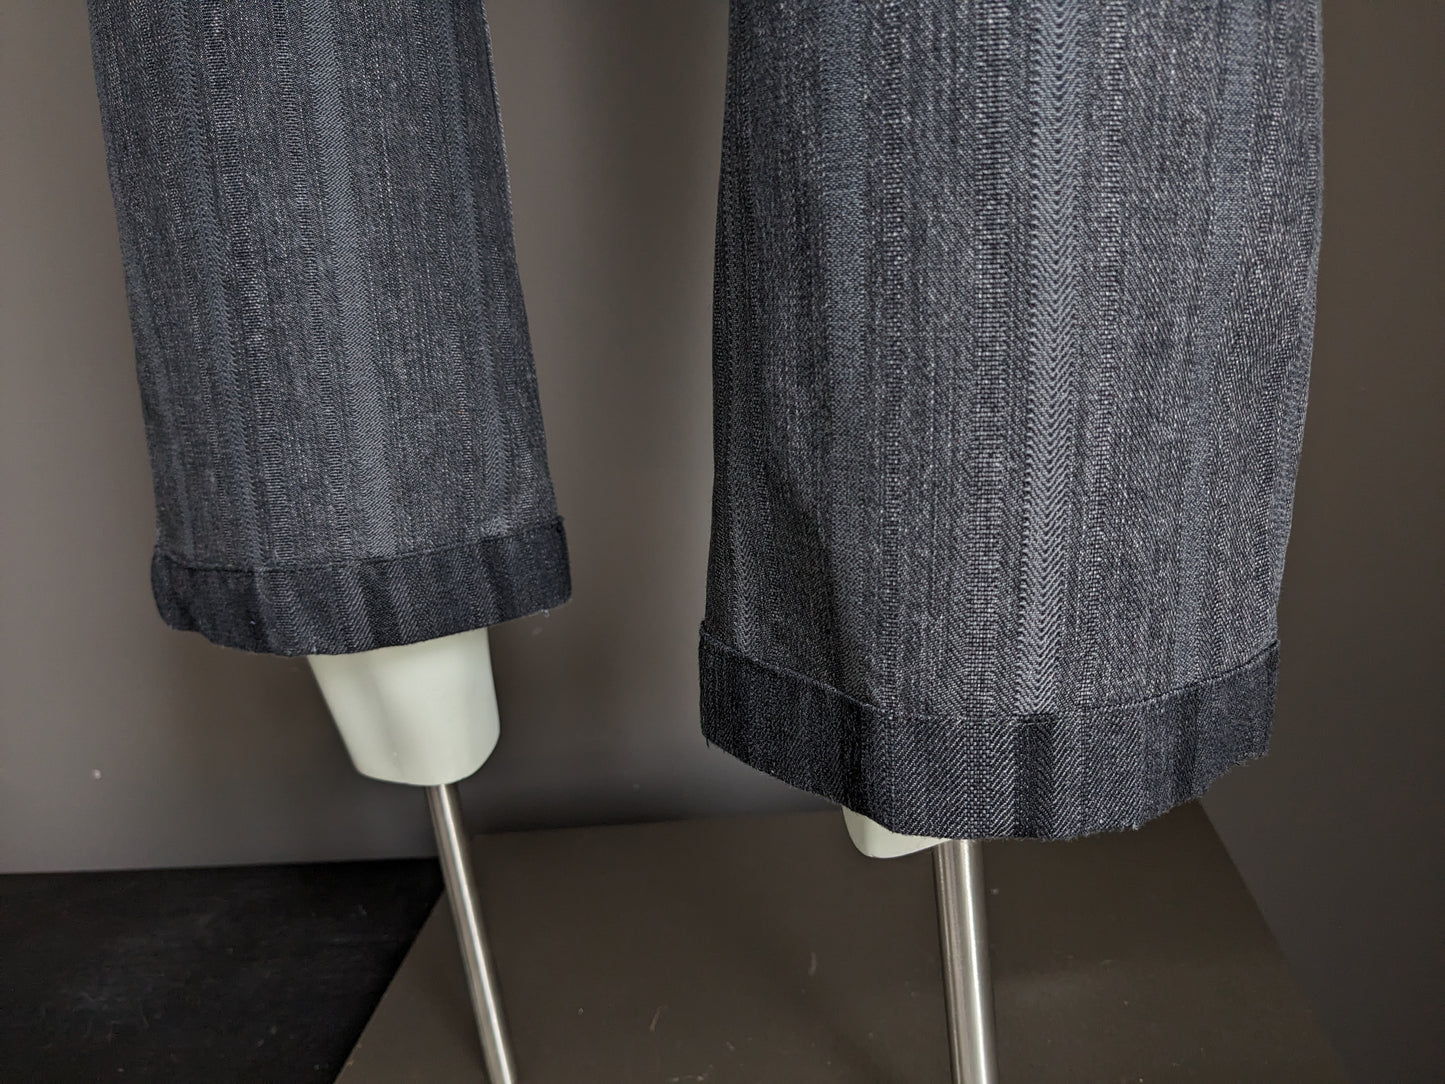 Jeans edizione di culto con applicazioni a bretelle. Striped nero grigio. Taglia W32 - L28.